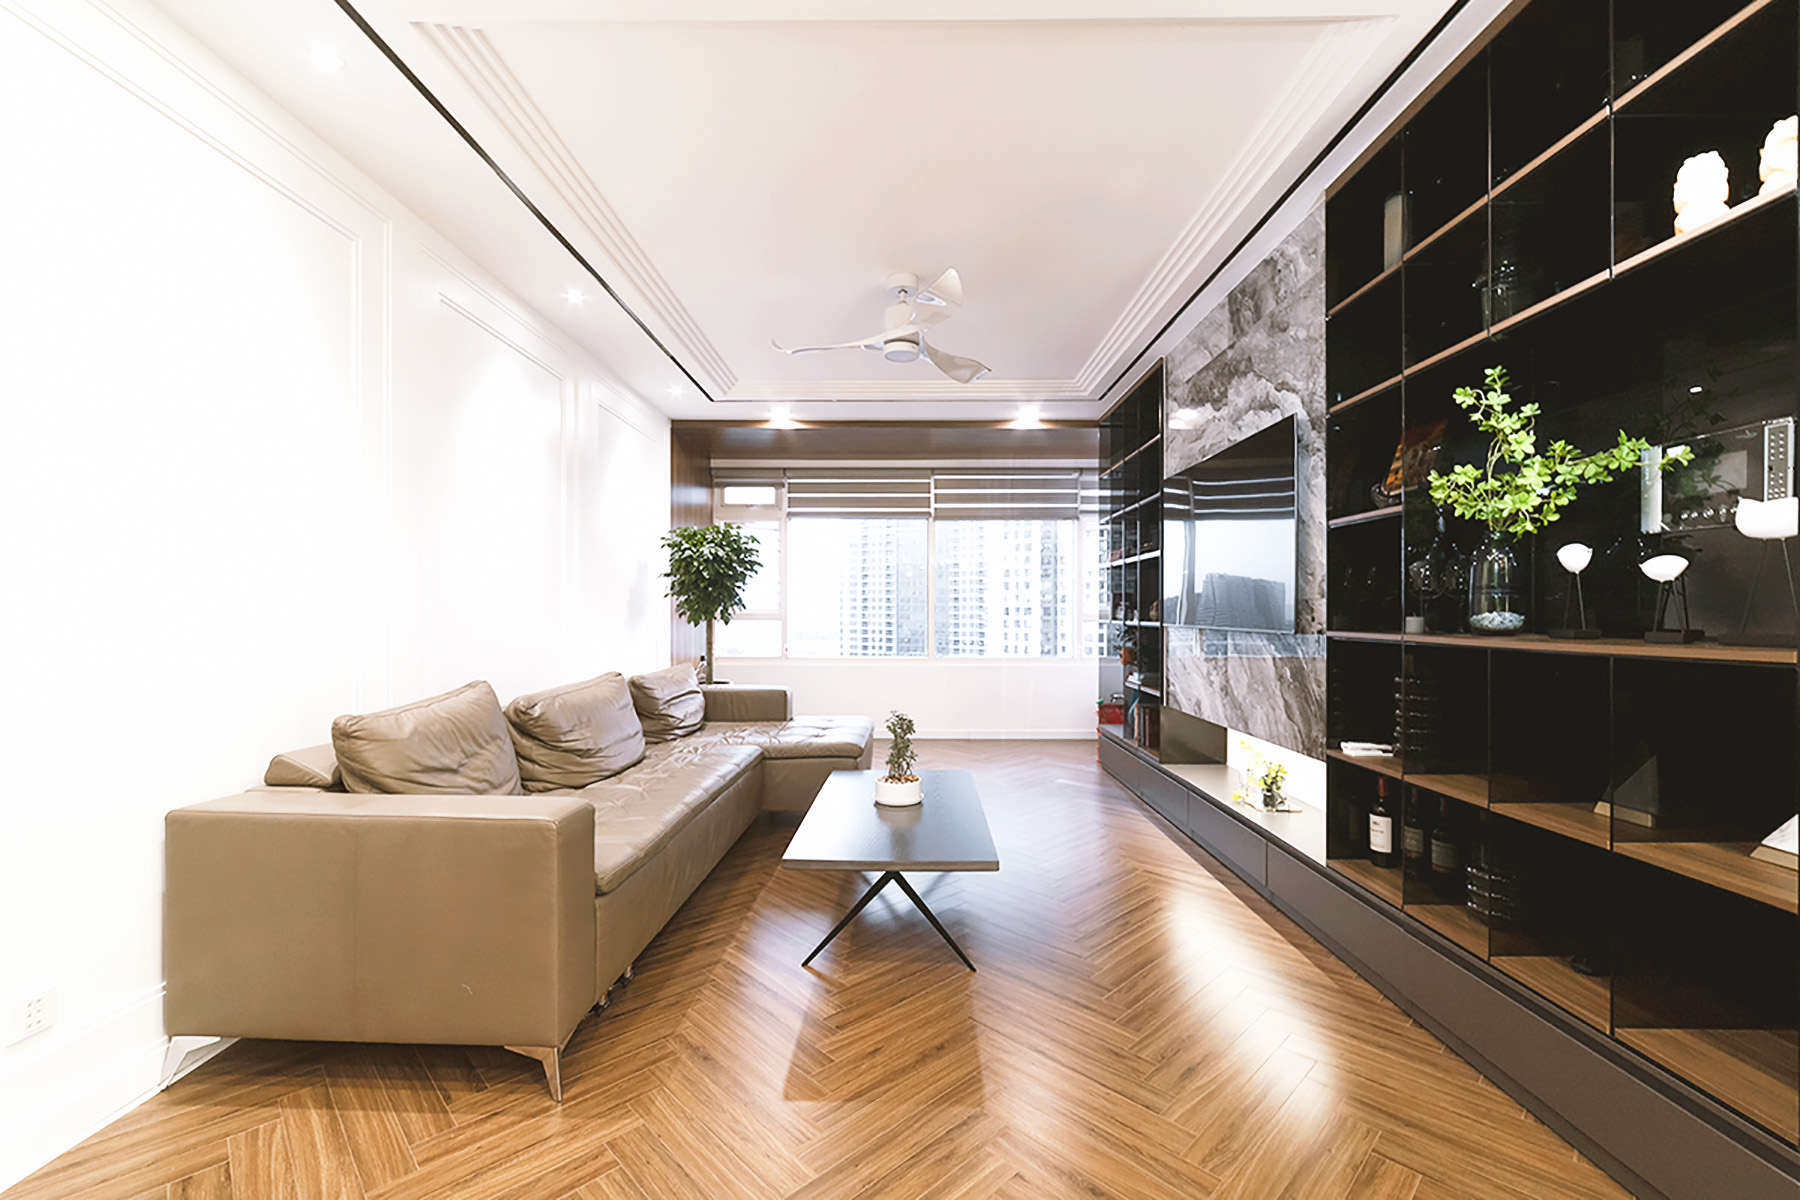 Phòng khách, phong cách Hiện đại Modern, hoàn thiện nội thất, căn hộ Saigon Pearl Topaz 2